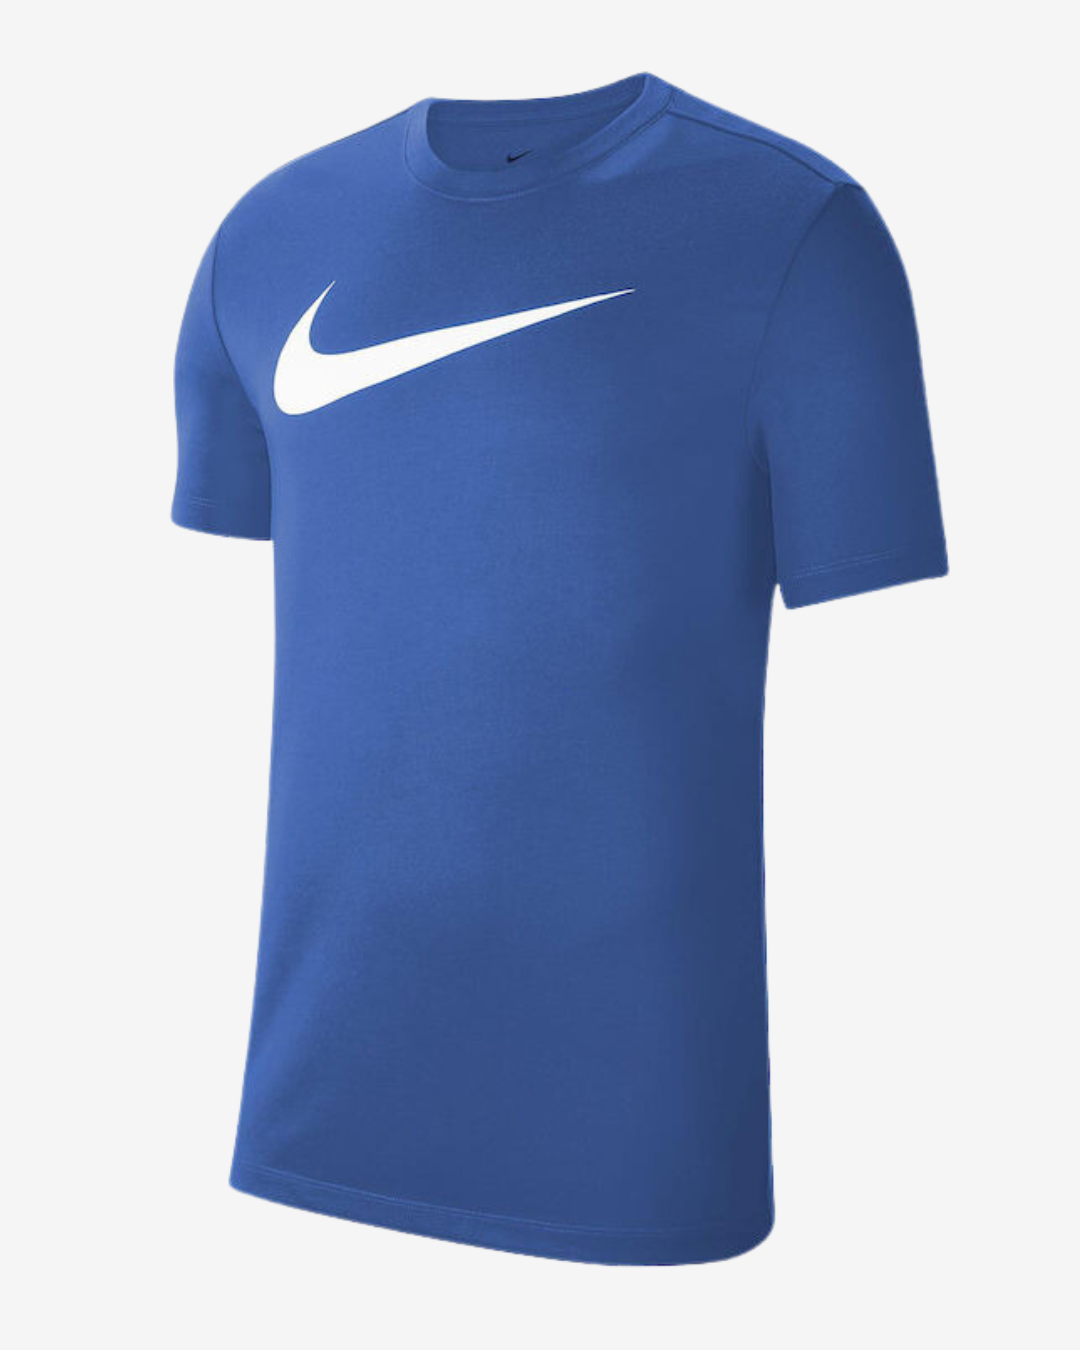 Nike Dri-fit park 20 t-shirt - Blå - Str. L - Modish.dk